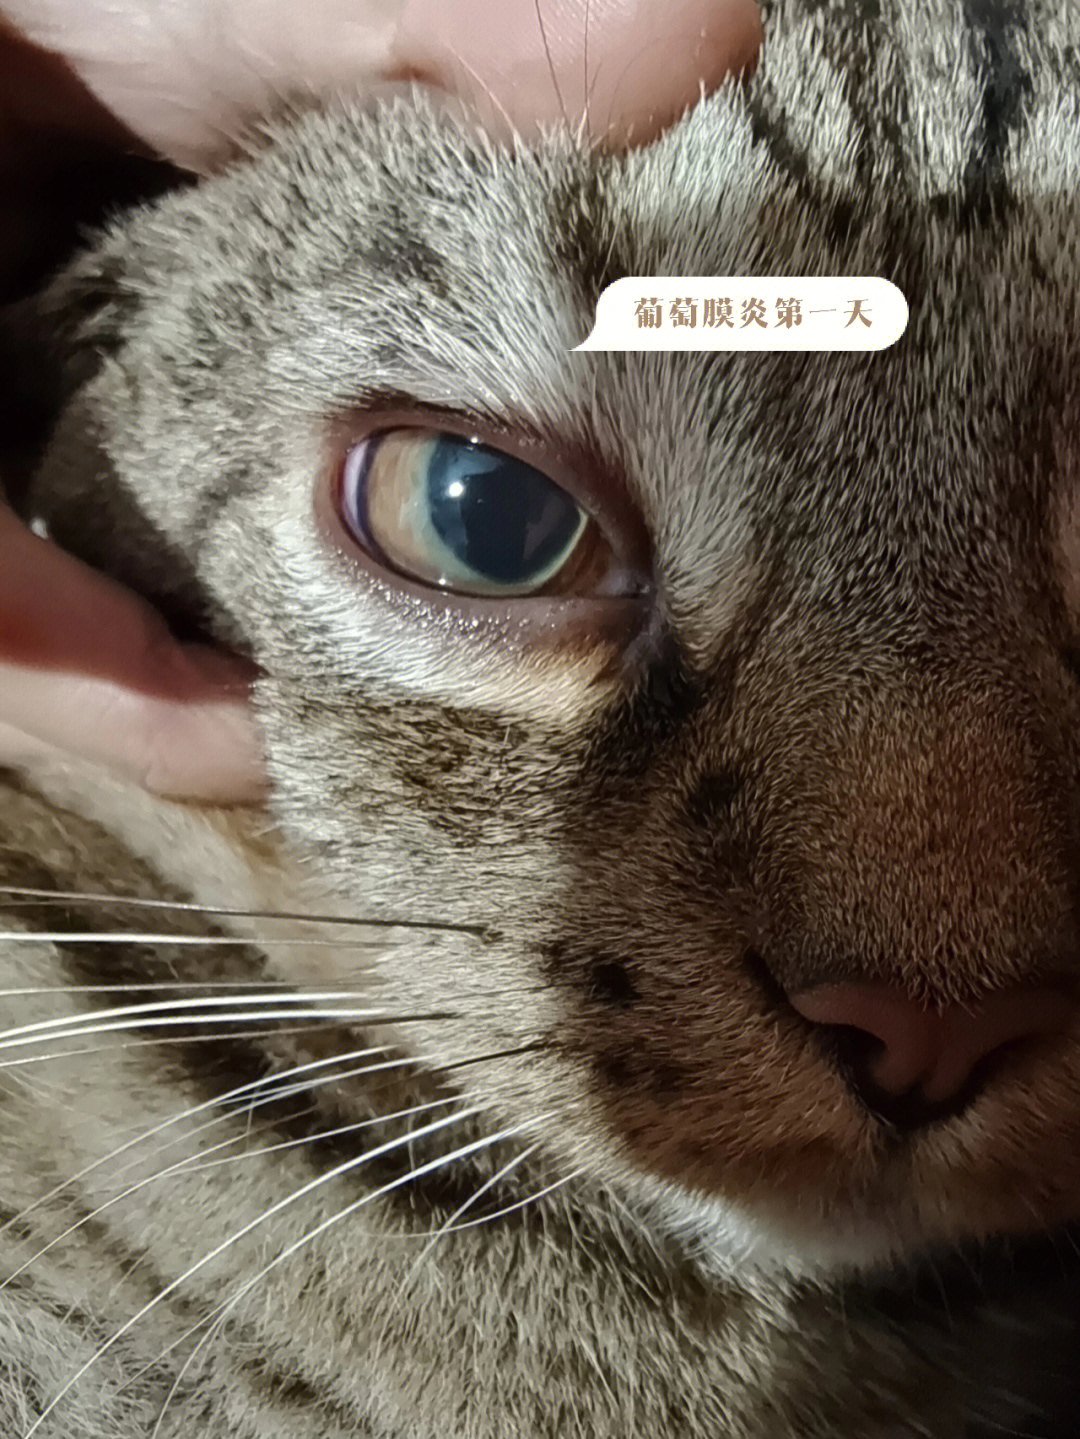 猫咪全葡萄膜炎眼睛变化过程